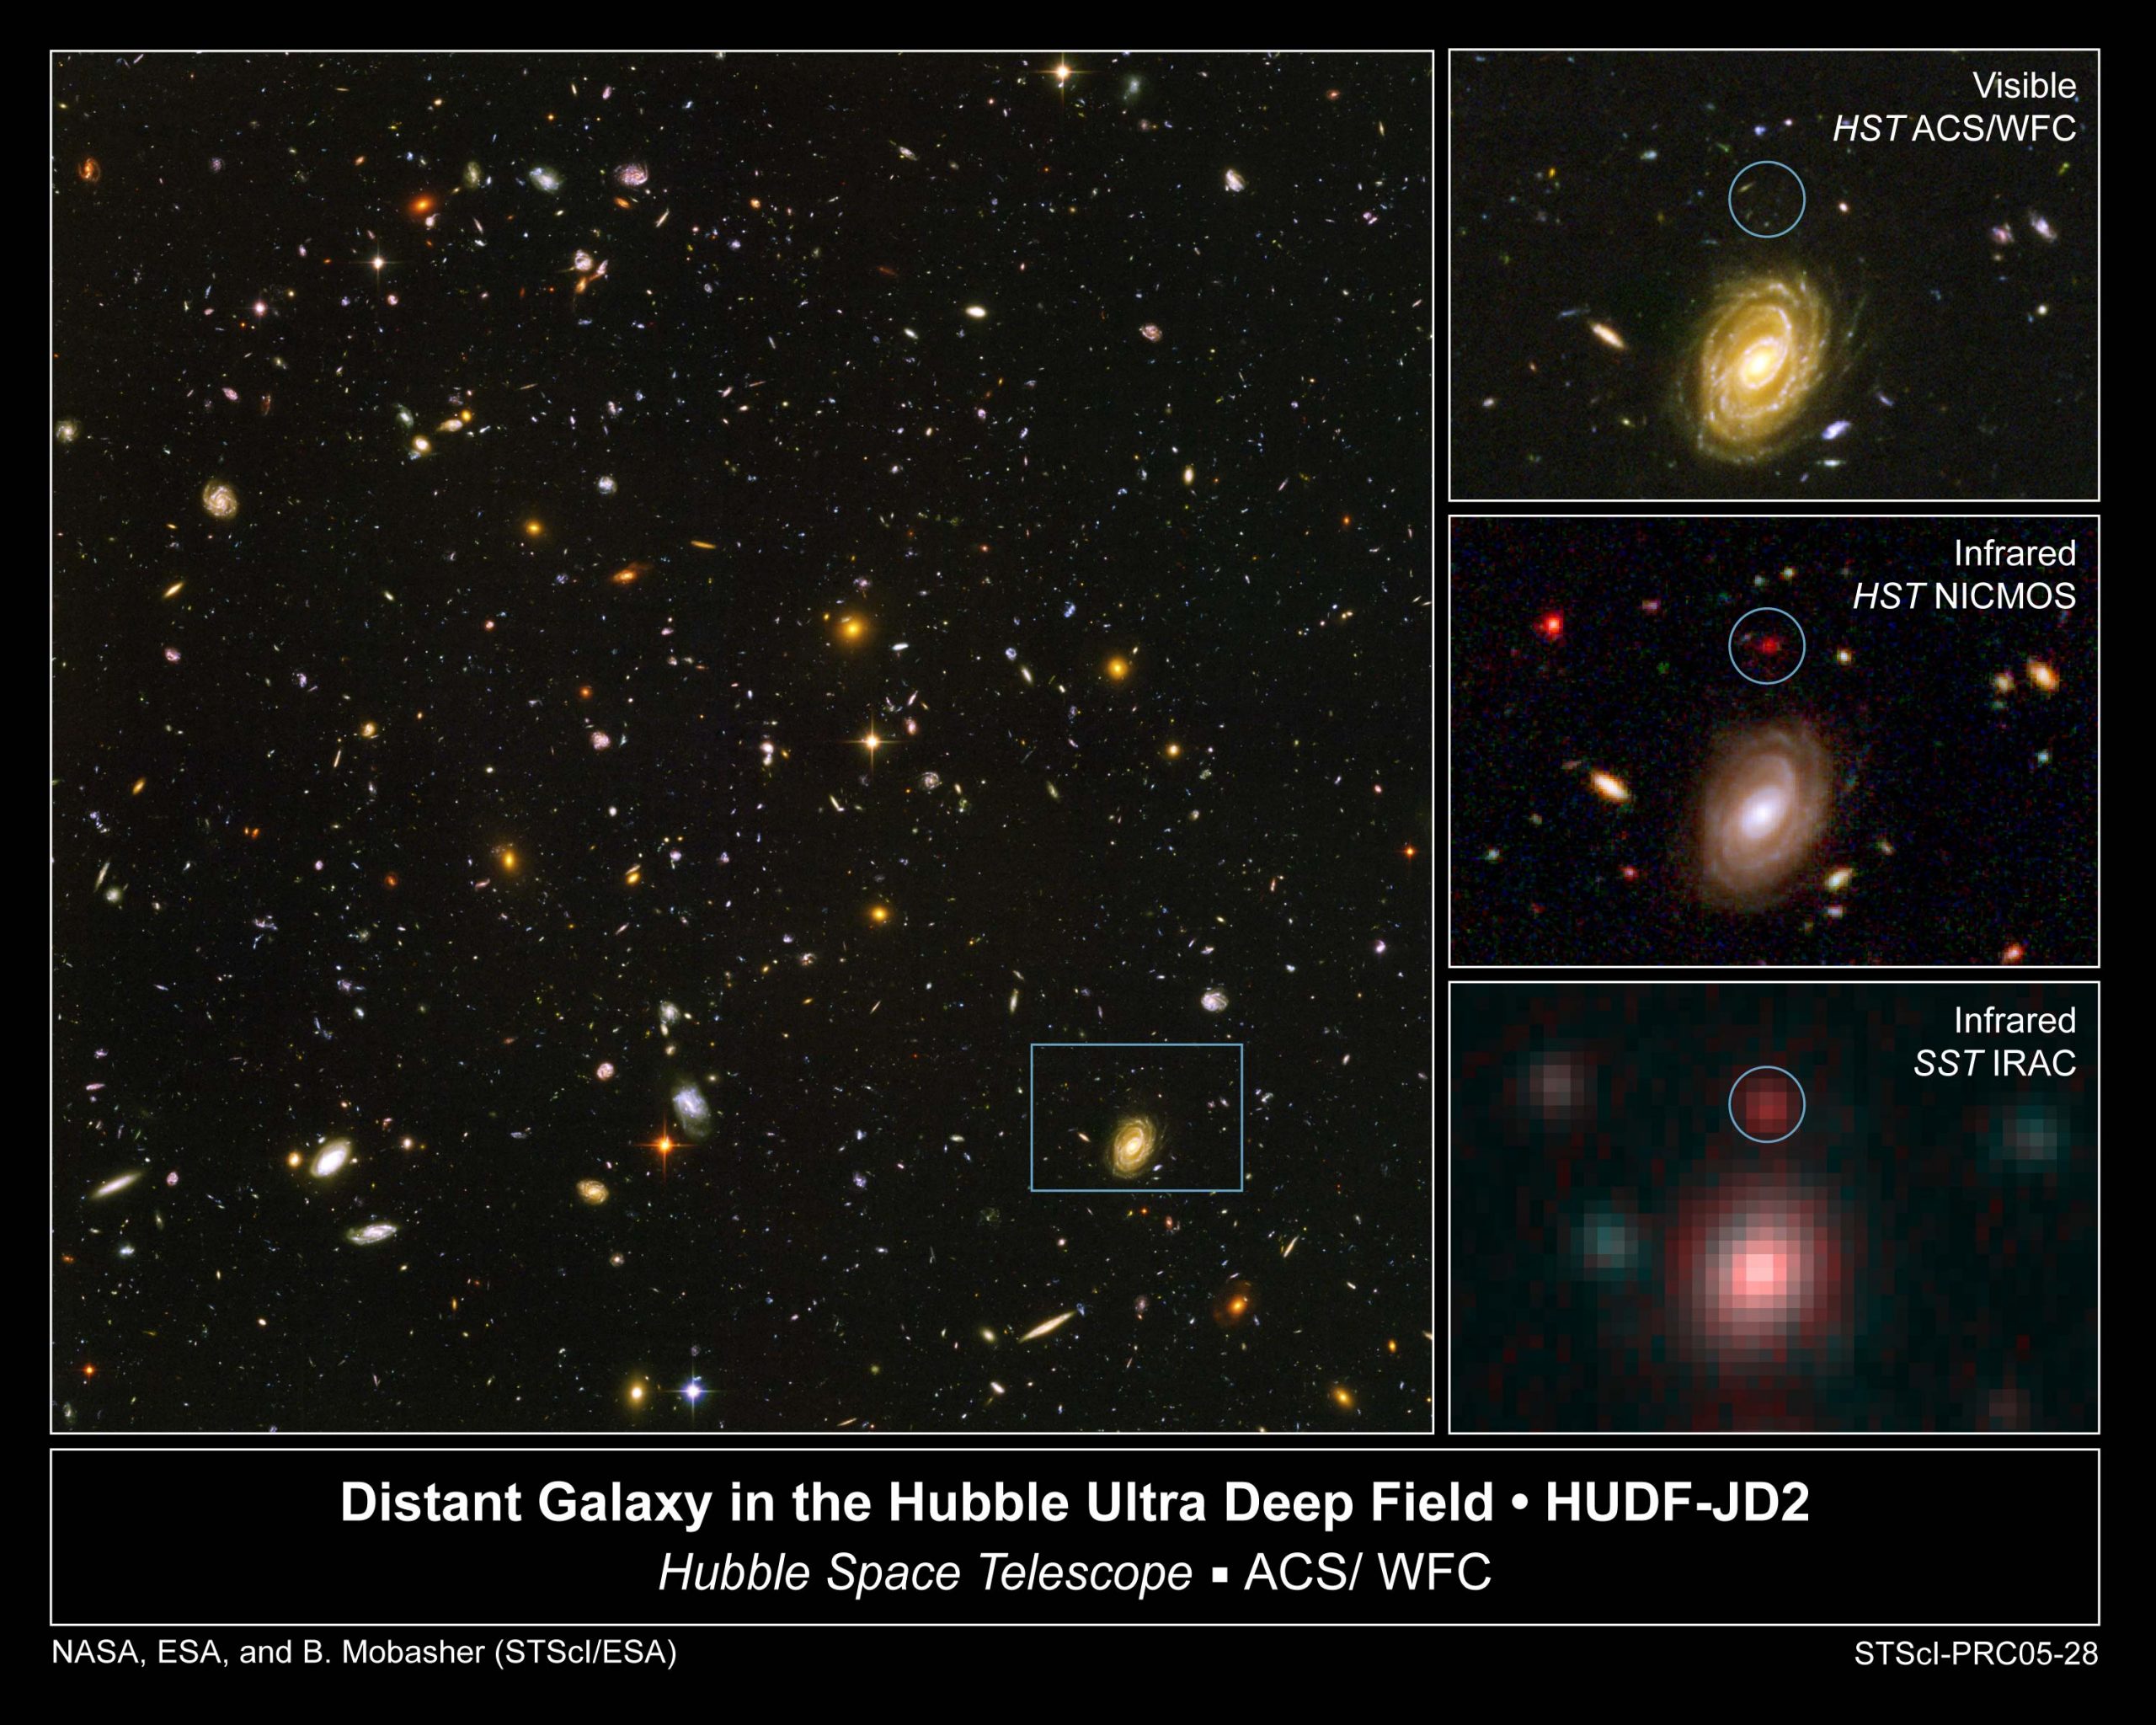 Wycinek tzw. „Ultra Głębokiego Pola Hubble’a” (obraz po lewej stronie), widziany w trzech różnych zakresach promieniowania (seria mniejszych obrazów po prawej). Dwie grafiki (górna i środkowa) pochodzą z Kosmicznego Teleskopu im. Hubble’a. Uzyskano je w zakresie widzialnym i bliskiej podczerwieni (435-850 nanometrów; górny obraz) i samej podczerwieni (1100-1600 nanometrów; środkowy obraz). Dolna grafika to efekt pracy obserwatorium Spitzer, kosmicznego teleskopu pracującego wyłącznie w podczerwieni. Obraz ze „Spitzera” powstał w zakresie 3600-8000 nanometrów i najbliżej mu do Kosmicznego Teleskopu im. Jamesa Webba. Na co zwrócić uwagę? Nad galaktyką HUDF-JD2. Znajduje się ona w centrum białego okręgu na każdym z trzech małych obrazków. Co ciekawe, wcale nie widać jej na zdjęciu w zakresie widzialnym. Pojawia się dopiero w podczerwieni i jest tym silniejszym źródłem promieniowania, im dłuższe fale wykorzystamy do obserwacji. HUDF-JD2 to przykład galaktyki, z jakimi zmierzy się teleskop im. Webba. Dzieli ją od nas aż 12,8 mld lat świetlnych. Widzimy ją więc w chwili, gdy Wszechświat miał zaledwie 830 milionów lat. To jedna z najstarszych galaktyk, jaka znamy! „Webb” ma za zadanie wykryć znacznie więcej takich obiektów, a do tego utrwalić ich obraz ze szczegółowością, jaką dla zakresu widzialnego oferuje „Hubble”. Fot. ESA/NASA/STScI.